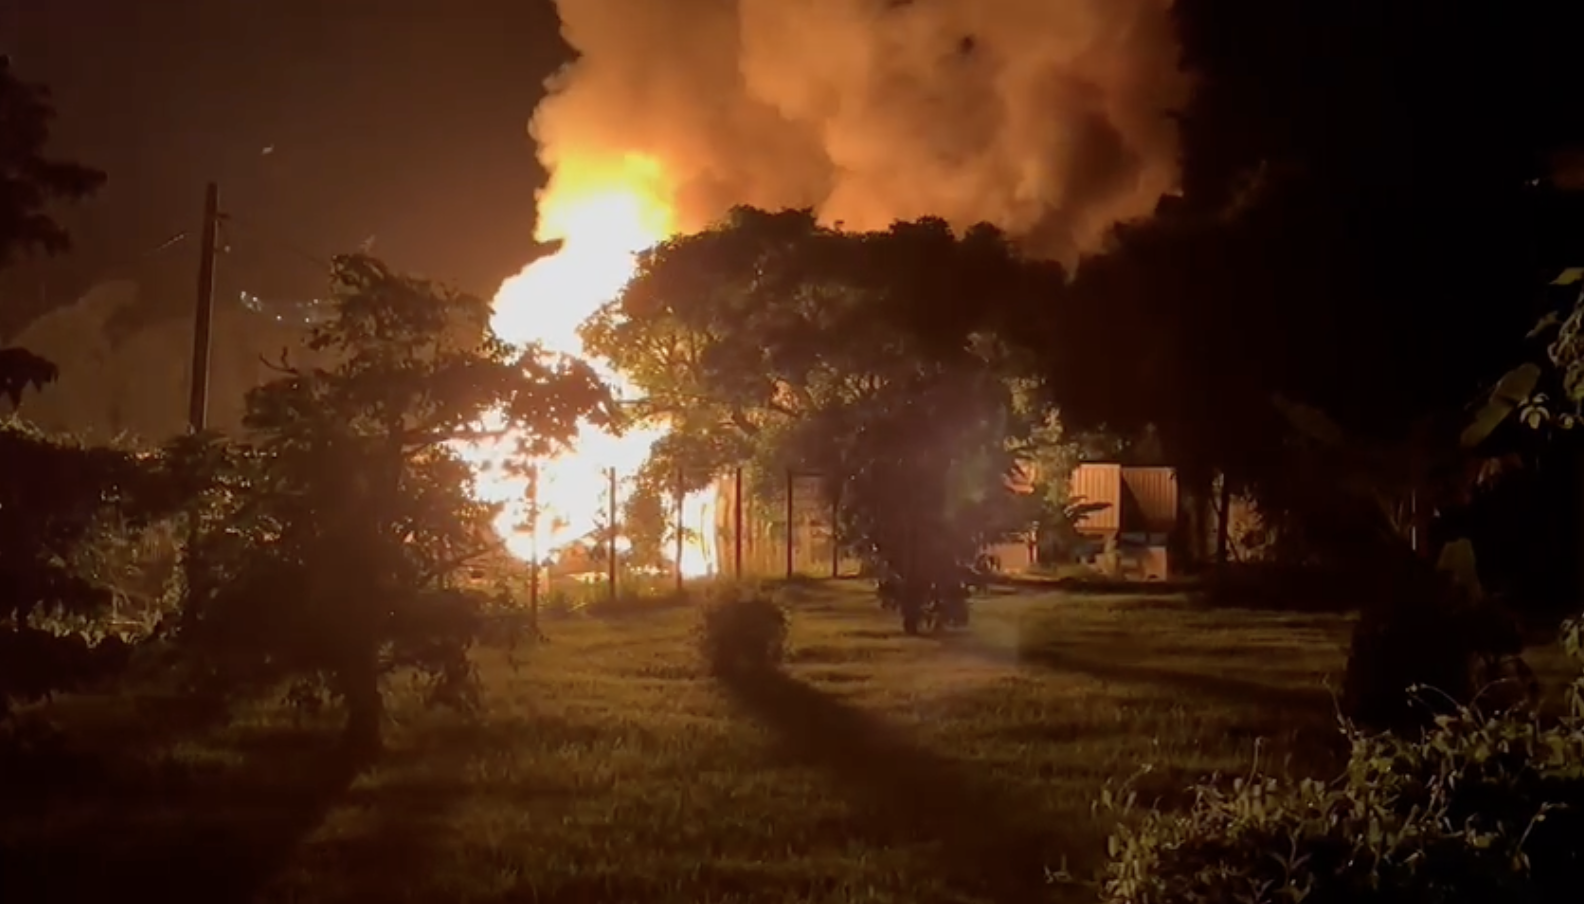     [VIDEO] Explosion et incendie important sur une exploitation agricole au Saint-Esprit

